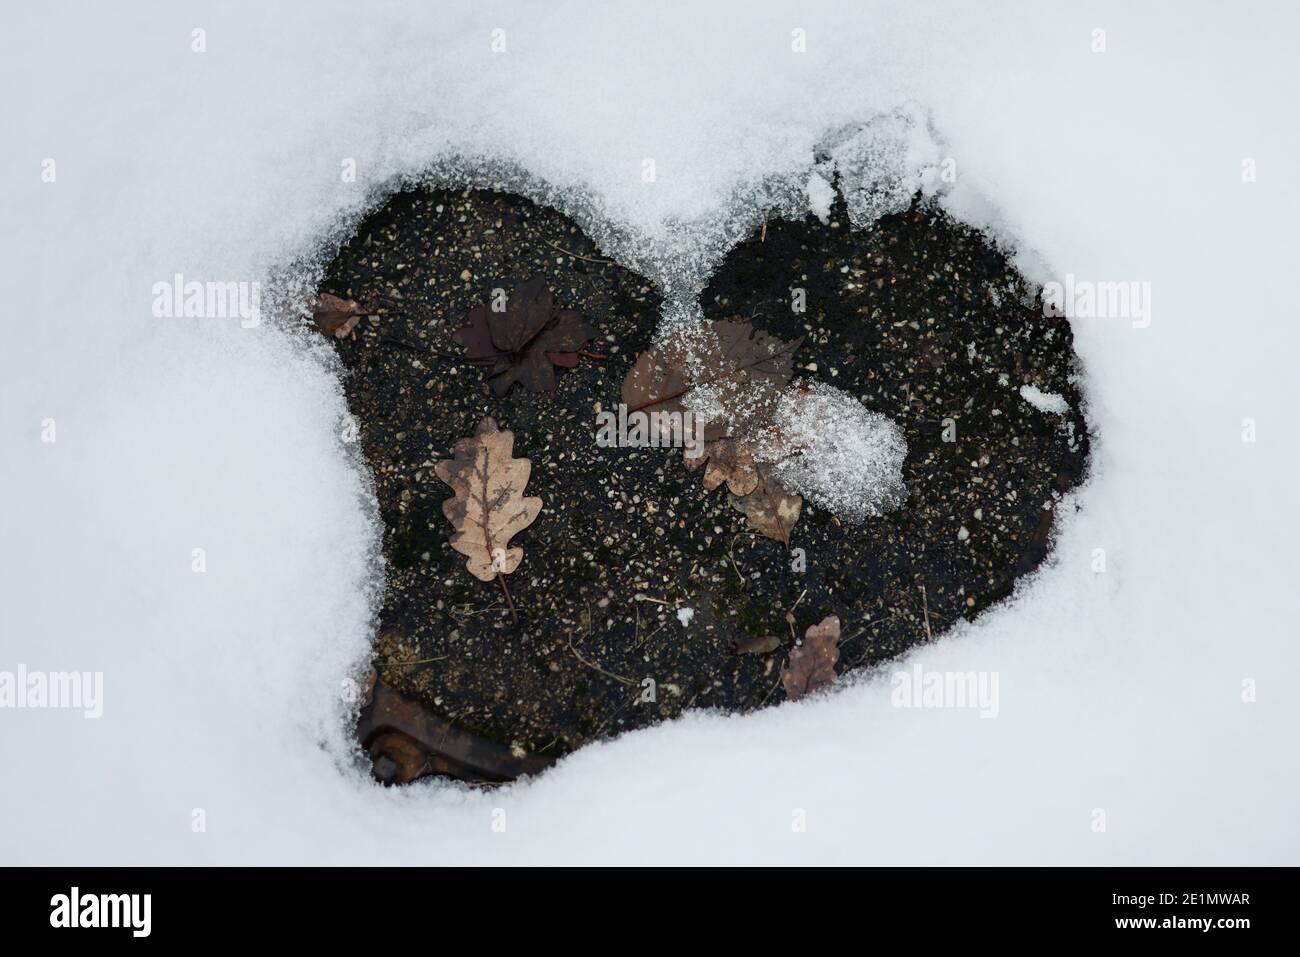 Eifel, PrŸm, 02.01.21: Feature Winterlandschaft in der Eifel, Schnee Schmilzt und nimmt dabei die Form eines Herzens an. Stock Photo